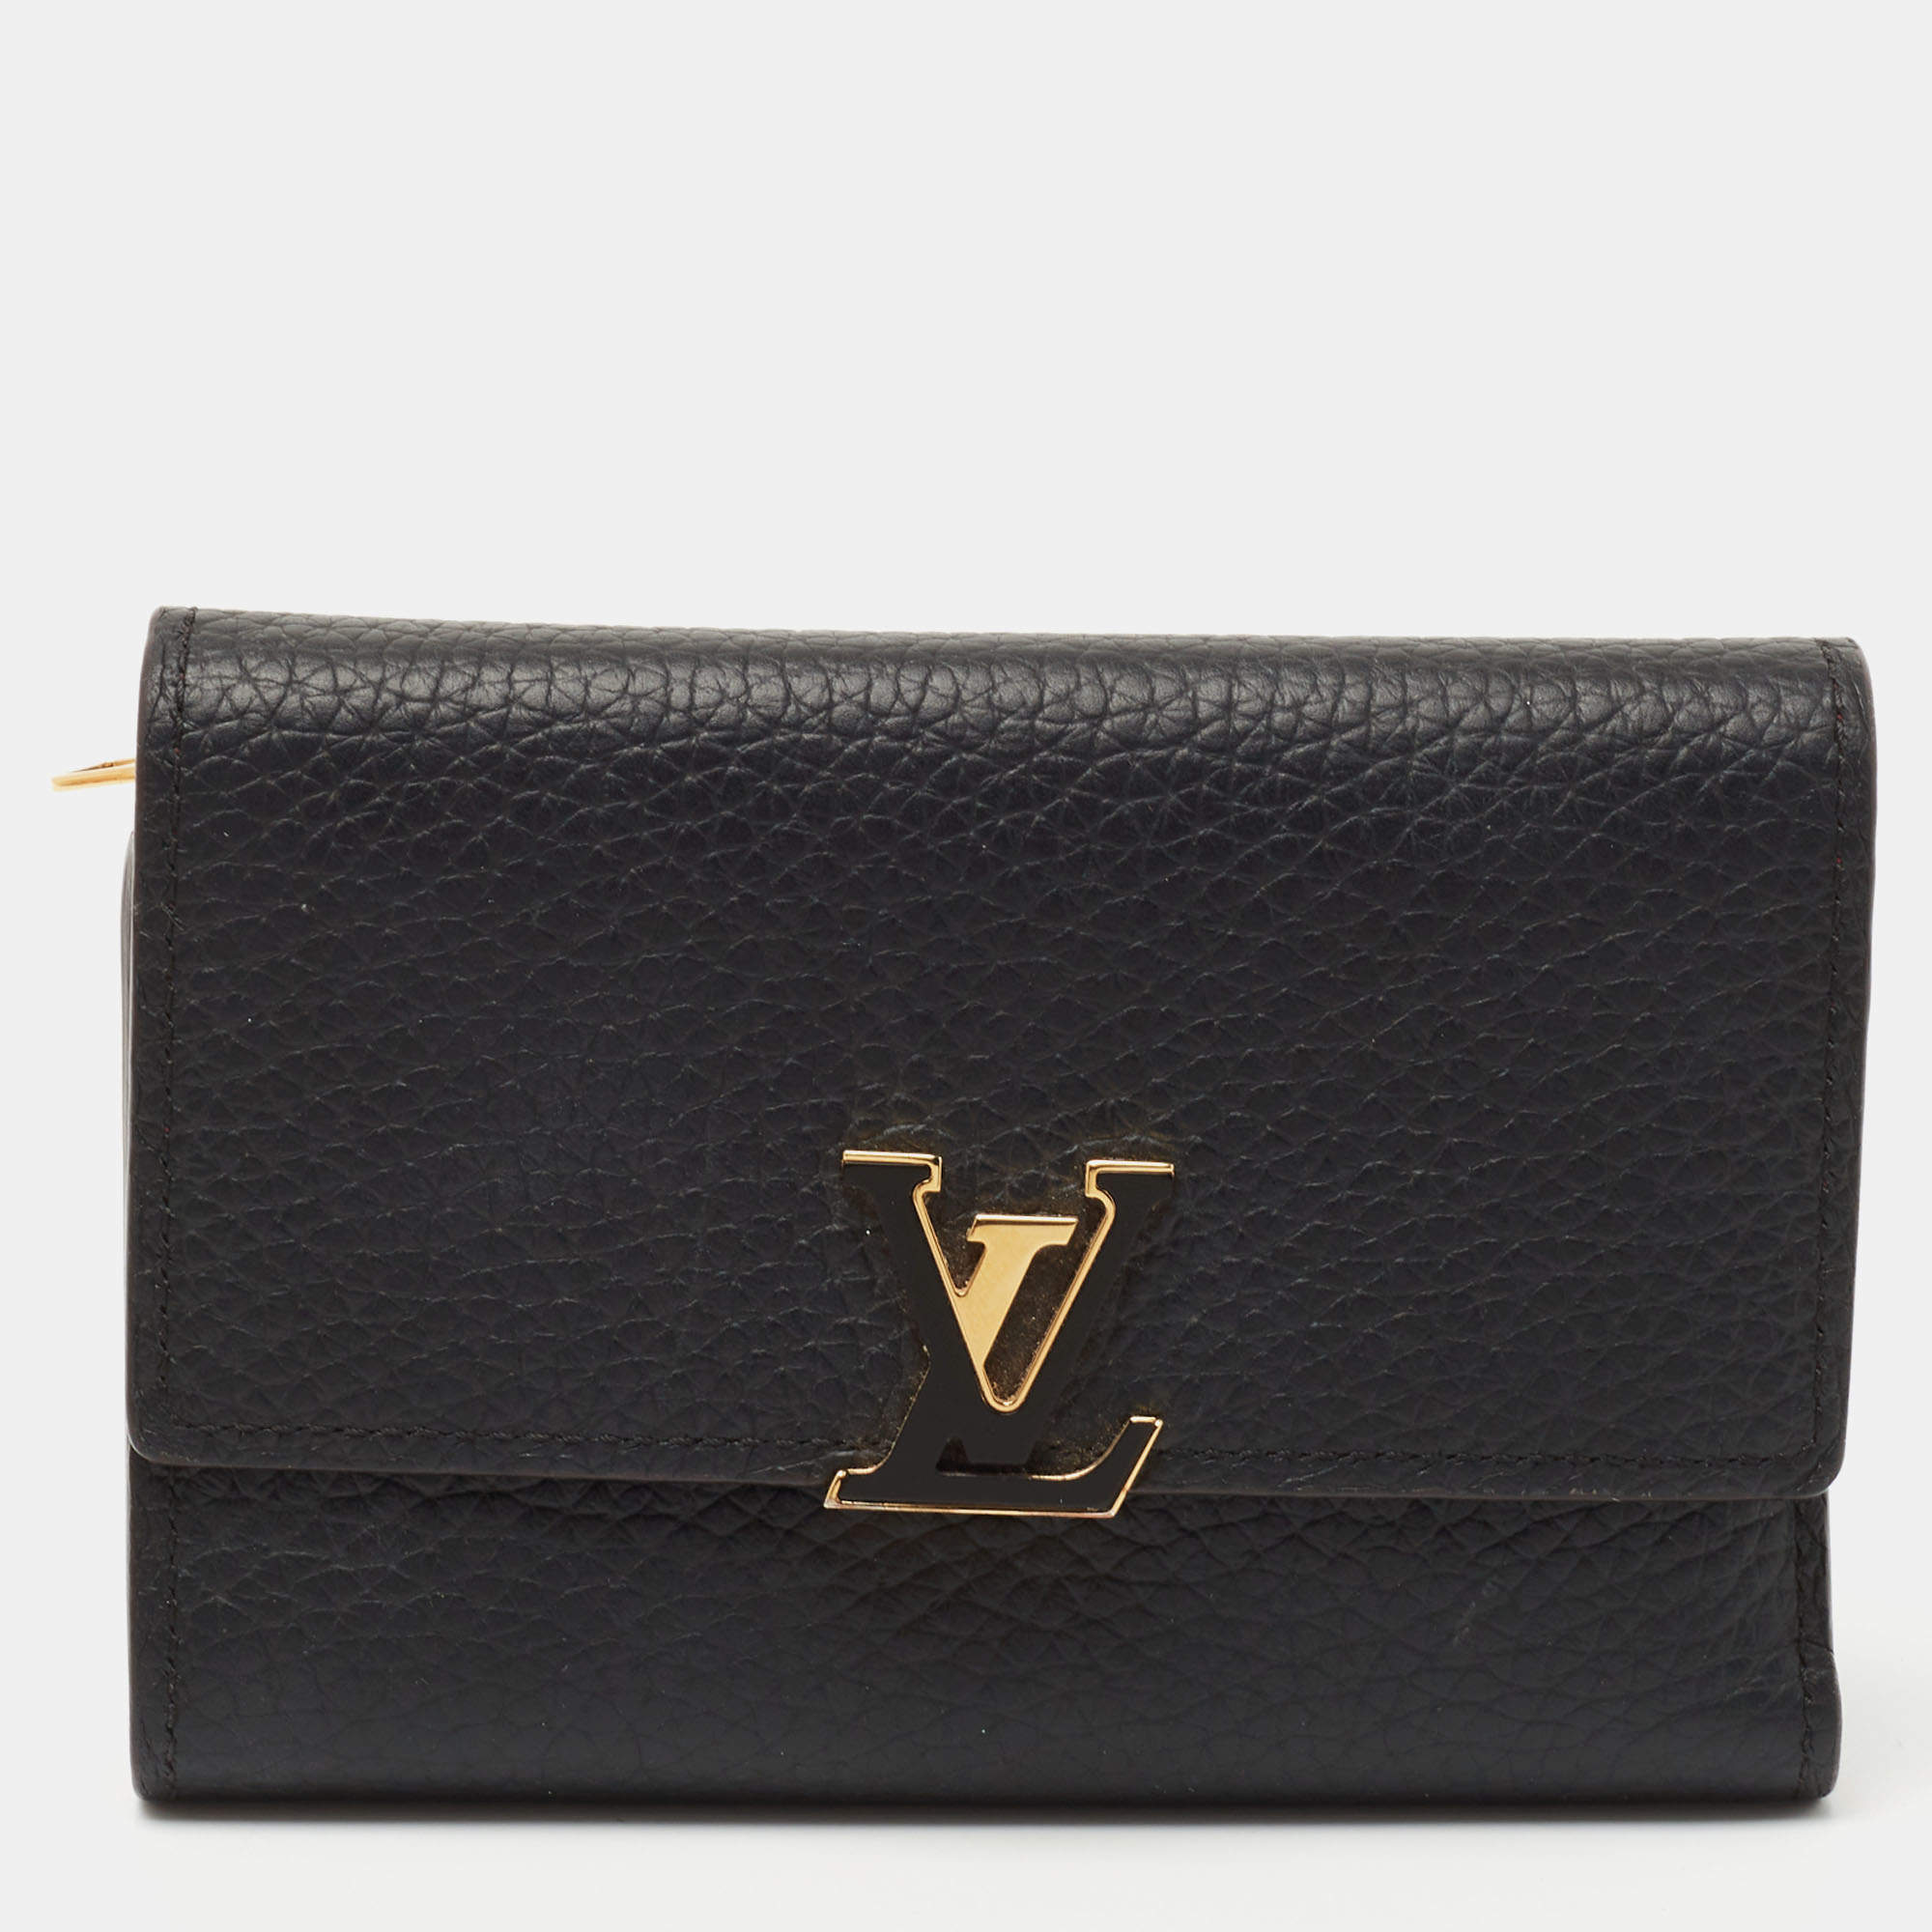 Louis Vuitton Black Taurillon Leather Maxi Capucines Wallet